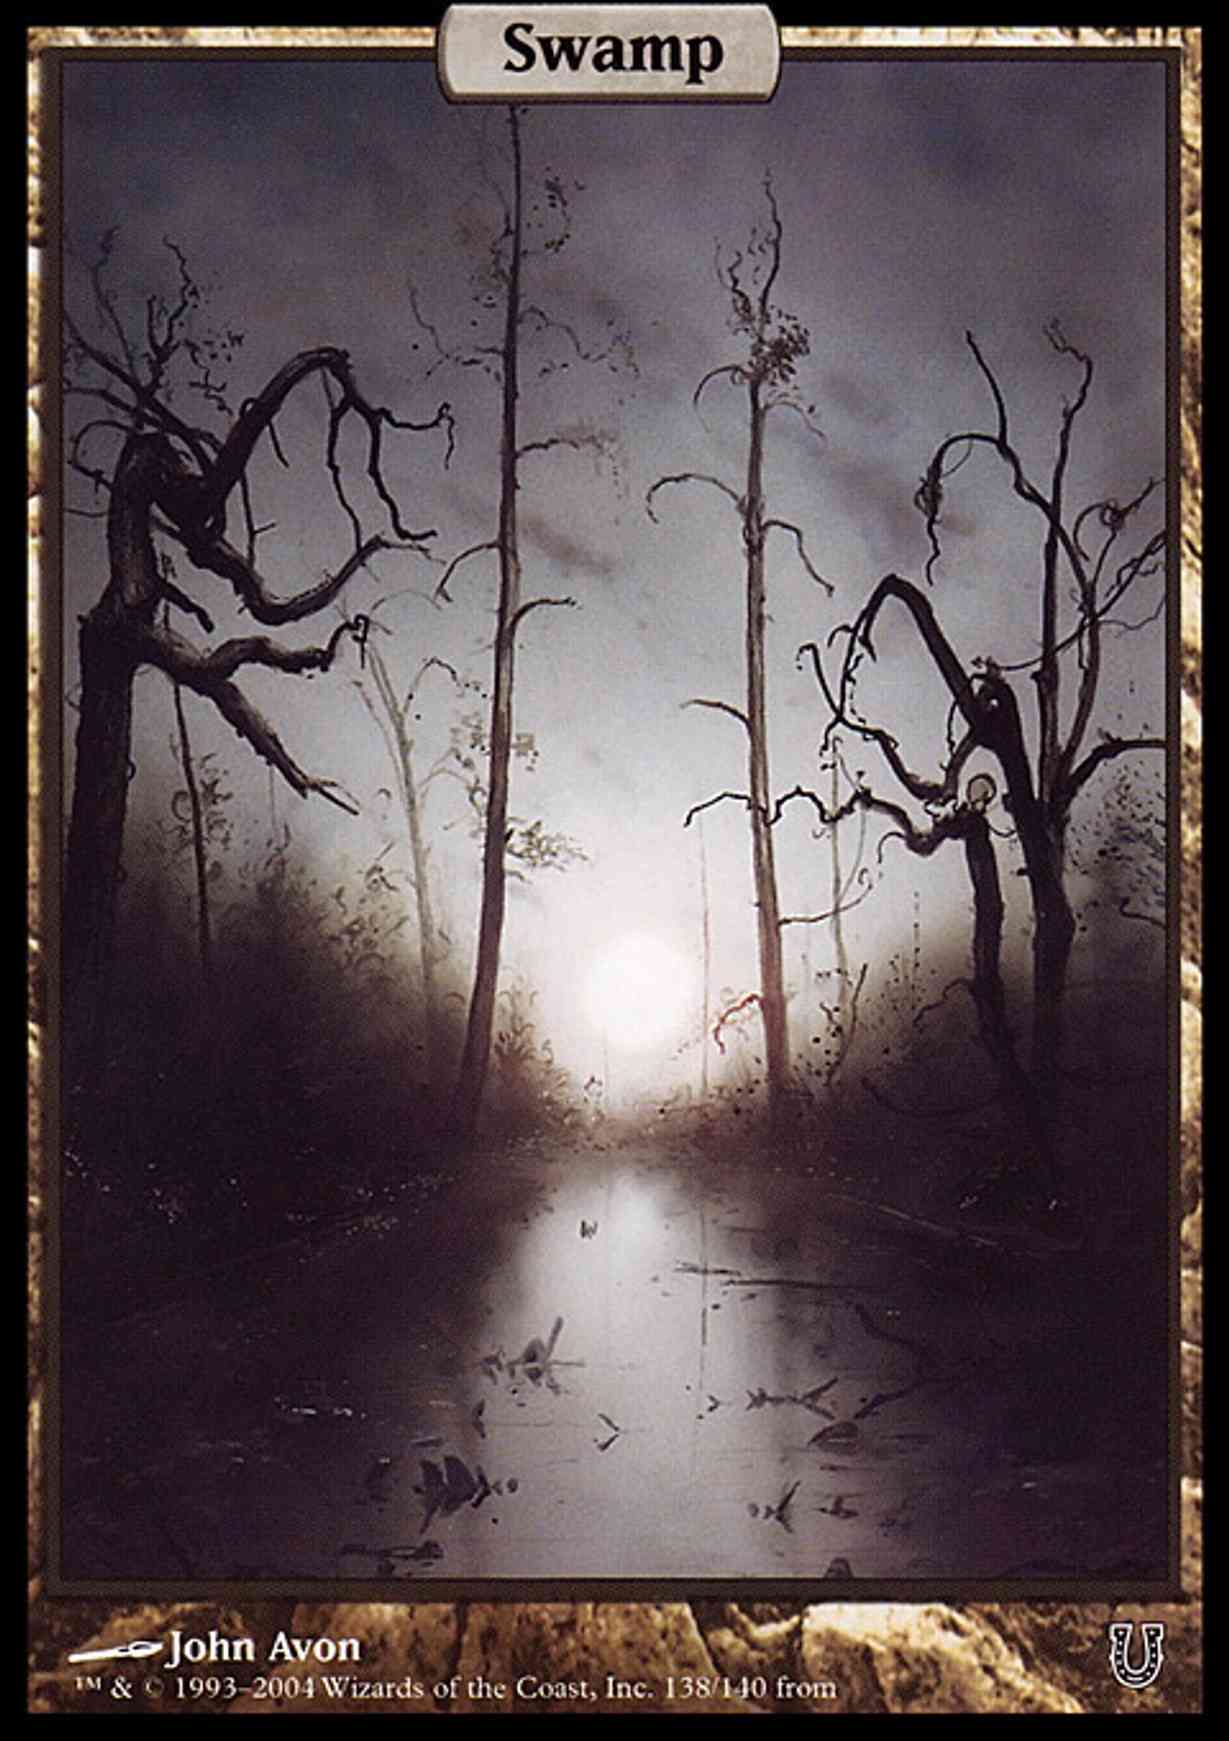 Swamp - Full Art magic card front